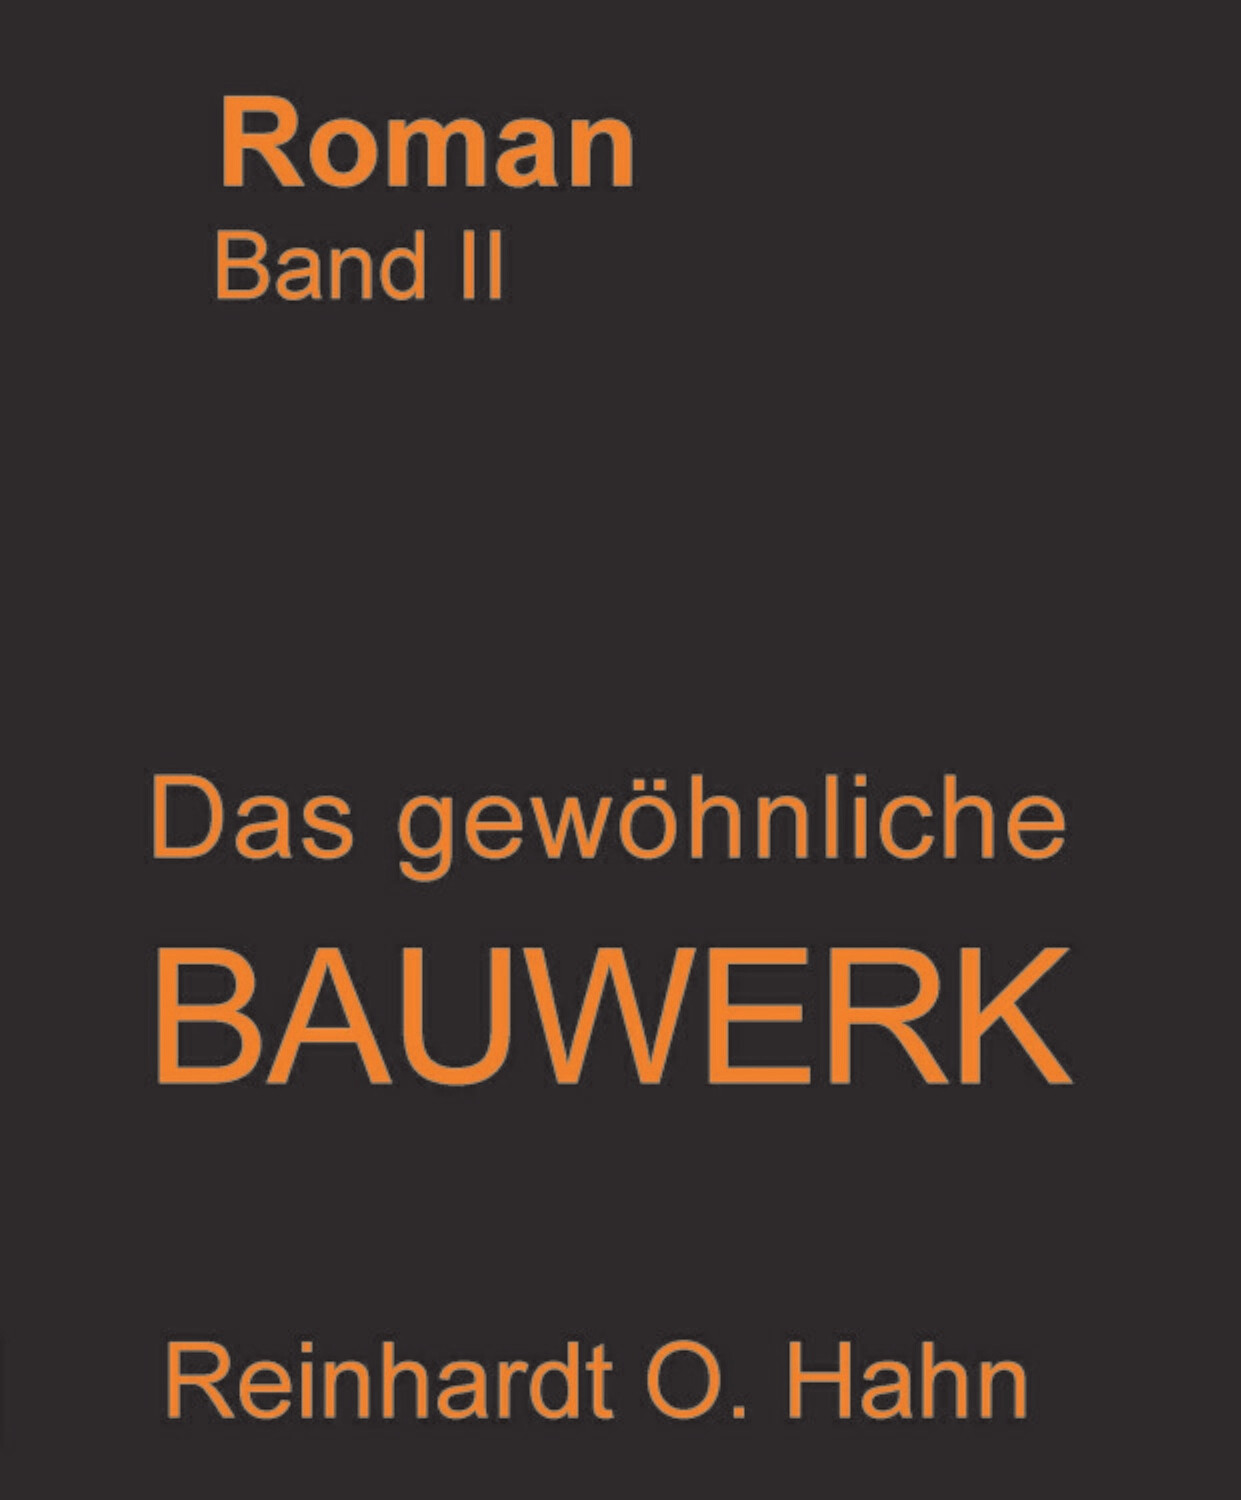 Reinhardt O. Hahn
Das gewöhnliche Bauwerk ISBN 978-3-946169-30-7